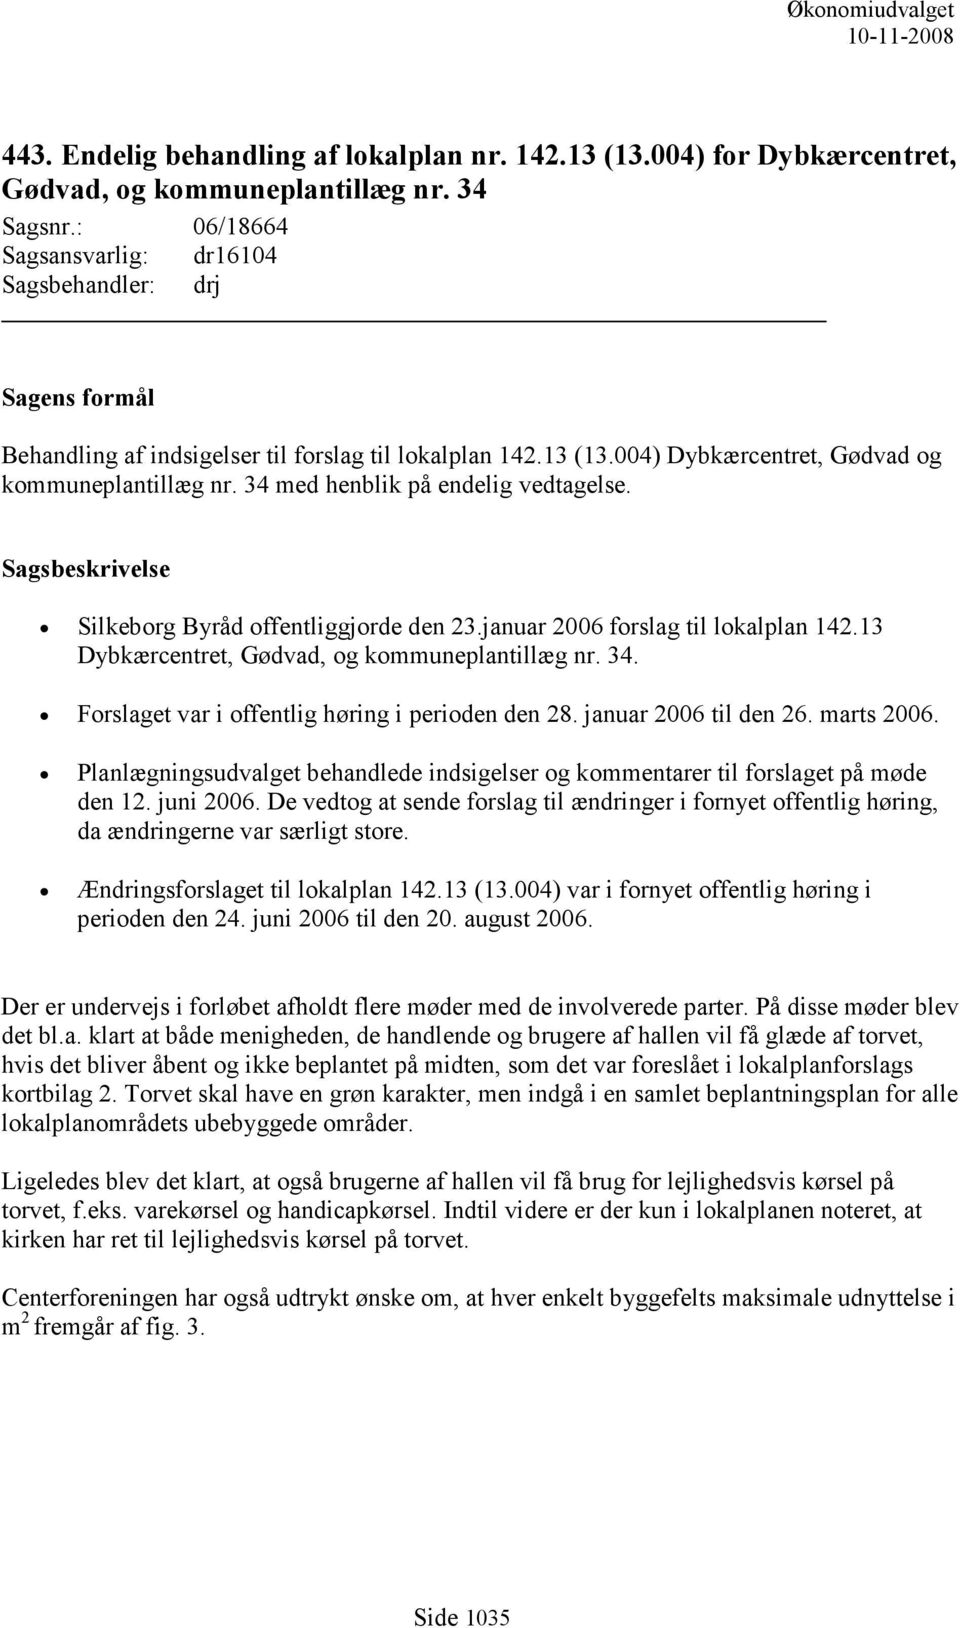 34 med henblik på endelig vedtagelse. Sagsbeskrivelse Silkeborg Byråd offentliggjorde den 23.januar 2006 forslag til lokalplan 142.13 Dybkærcentret, Gødvad, og kommuneplantillæg nr. 34.